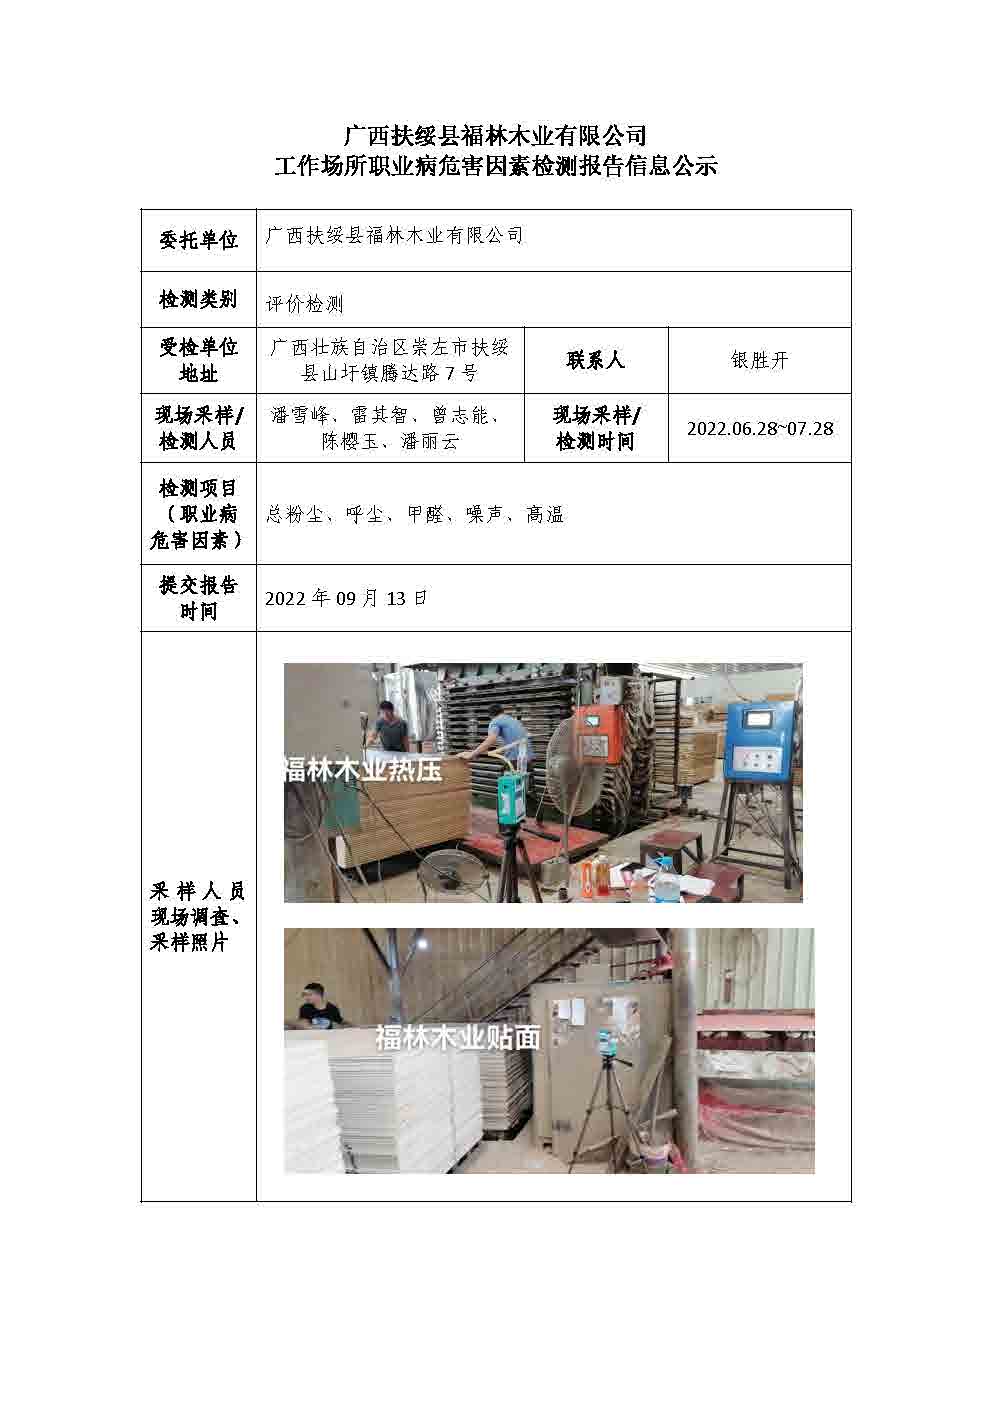 广西扶绥县福林木业有限公司工作场所职业病危害因素检测报告信息公示